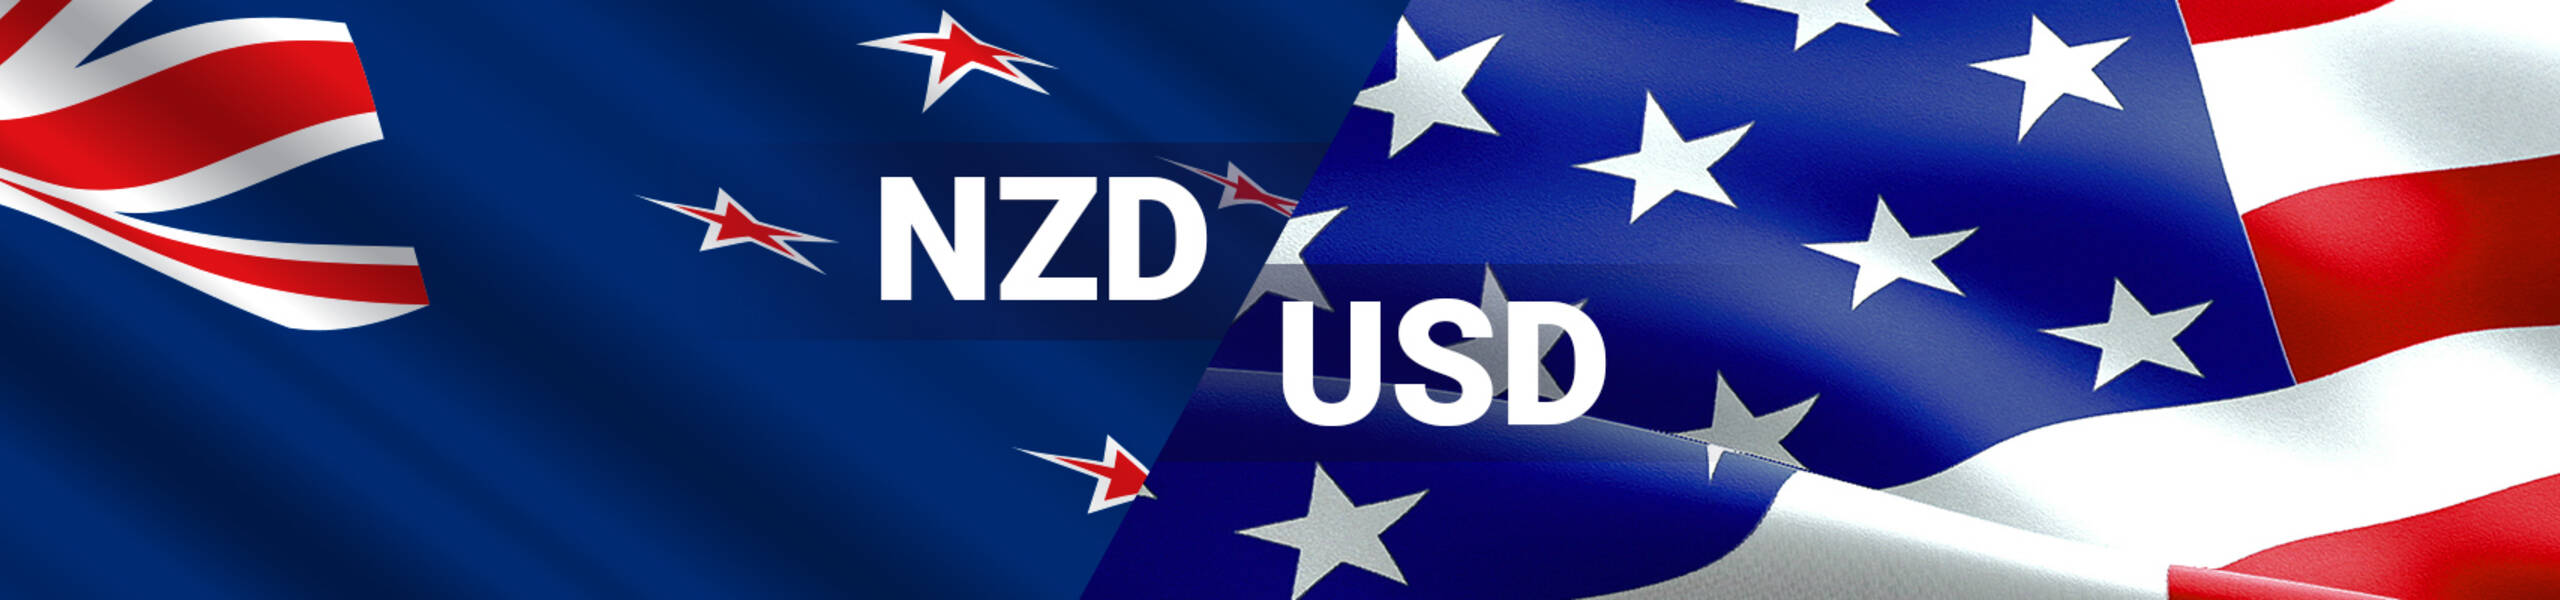 NZD/USD  Retomando movimiento bajista